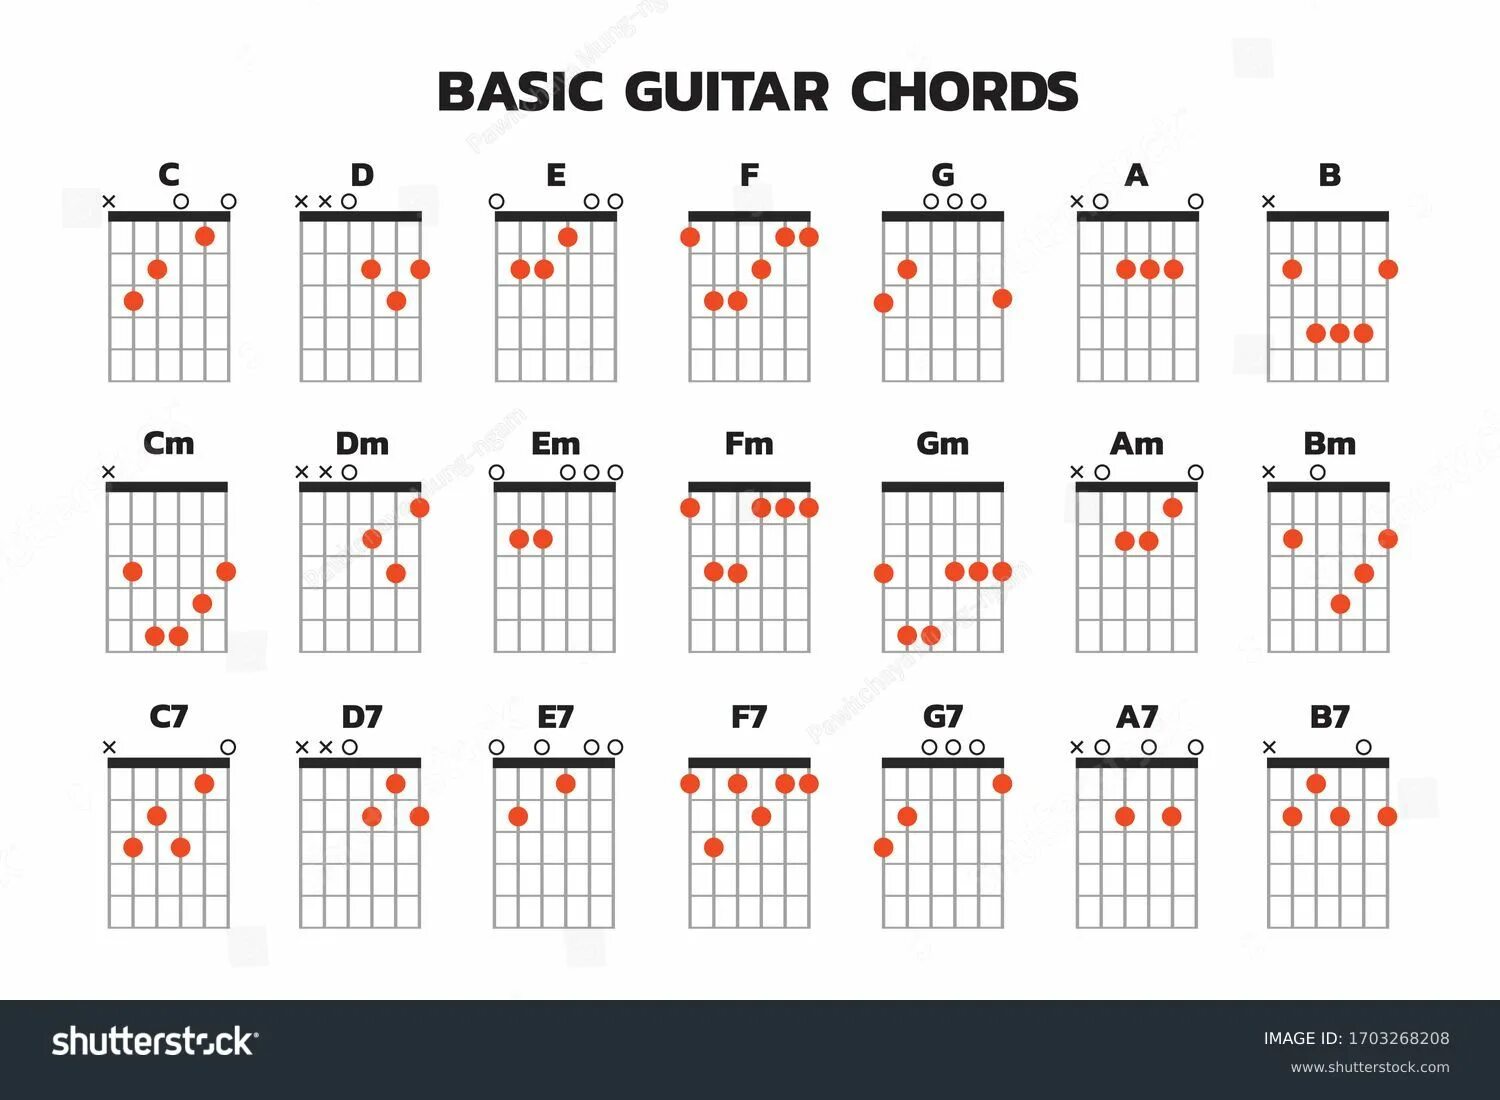 Таблица аккордов для гитары. Таблица аккордов для гитары 6 струн для начинающих. Таблица гитарных аккордов полная. Аккорды на гитаре 6 струн. Культурный кот аккорды